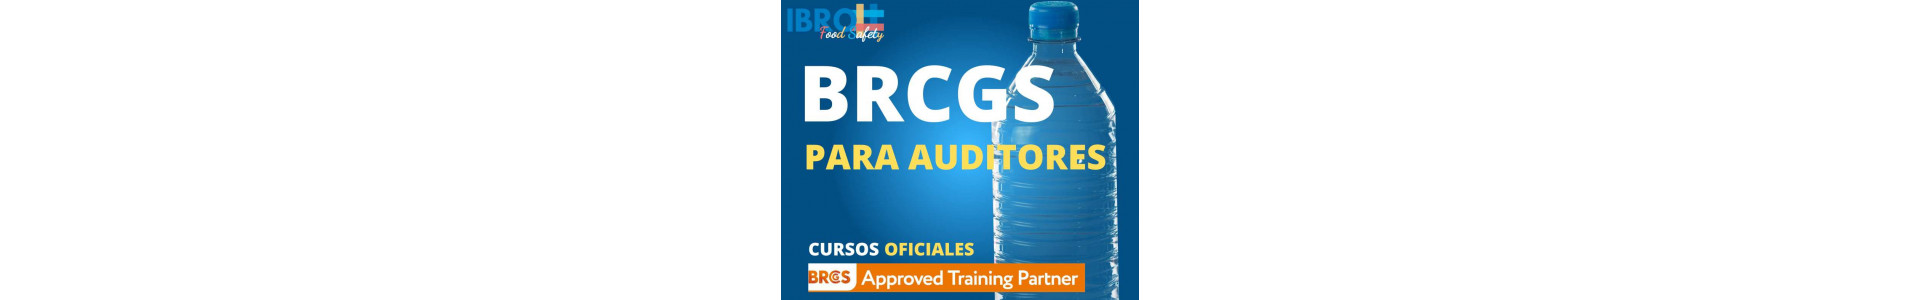 BRCGS Food para auditores